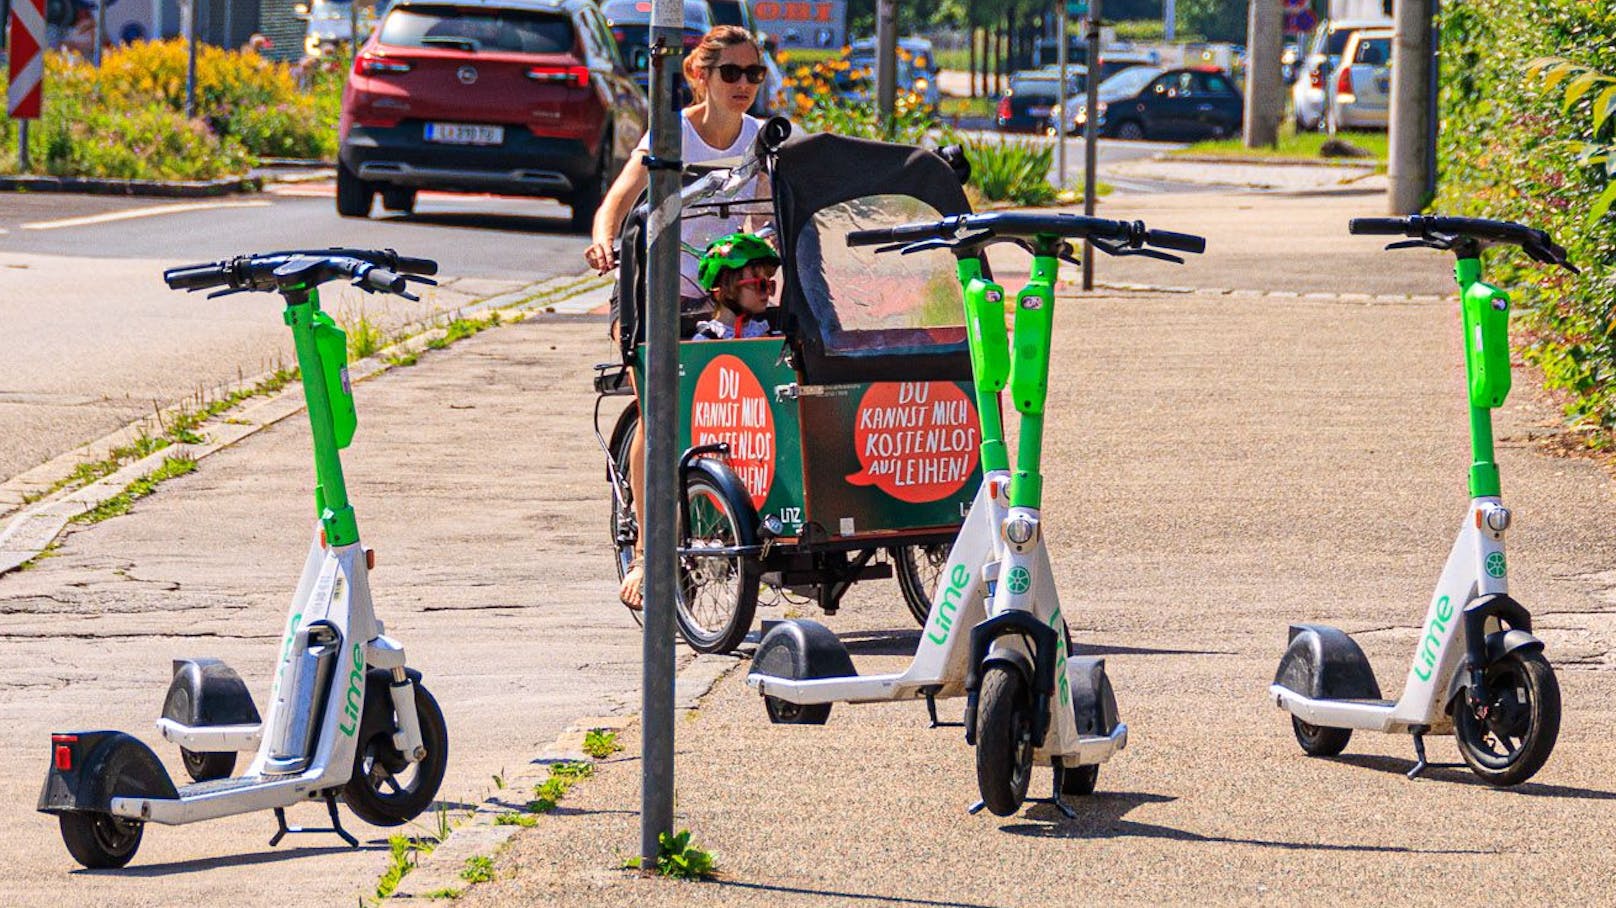 Wild abgestellte E-Scooter sind ein großes Ärgernis in Wien. Die Stadt beschließt nun neue Regeln um das Problem in den Griff zu bekommen.